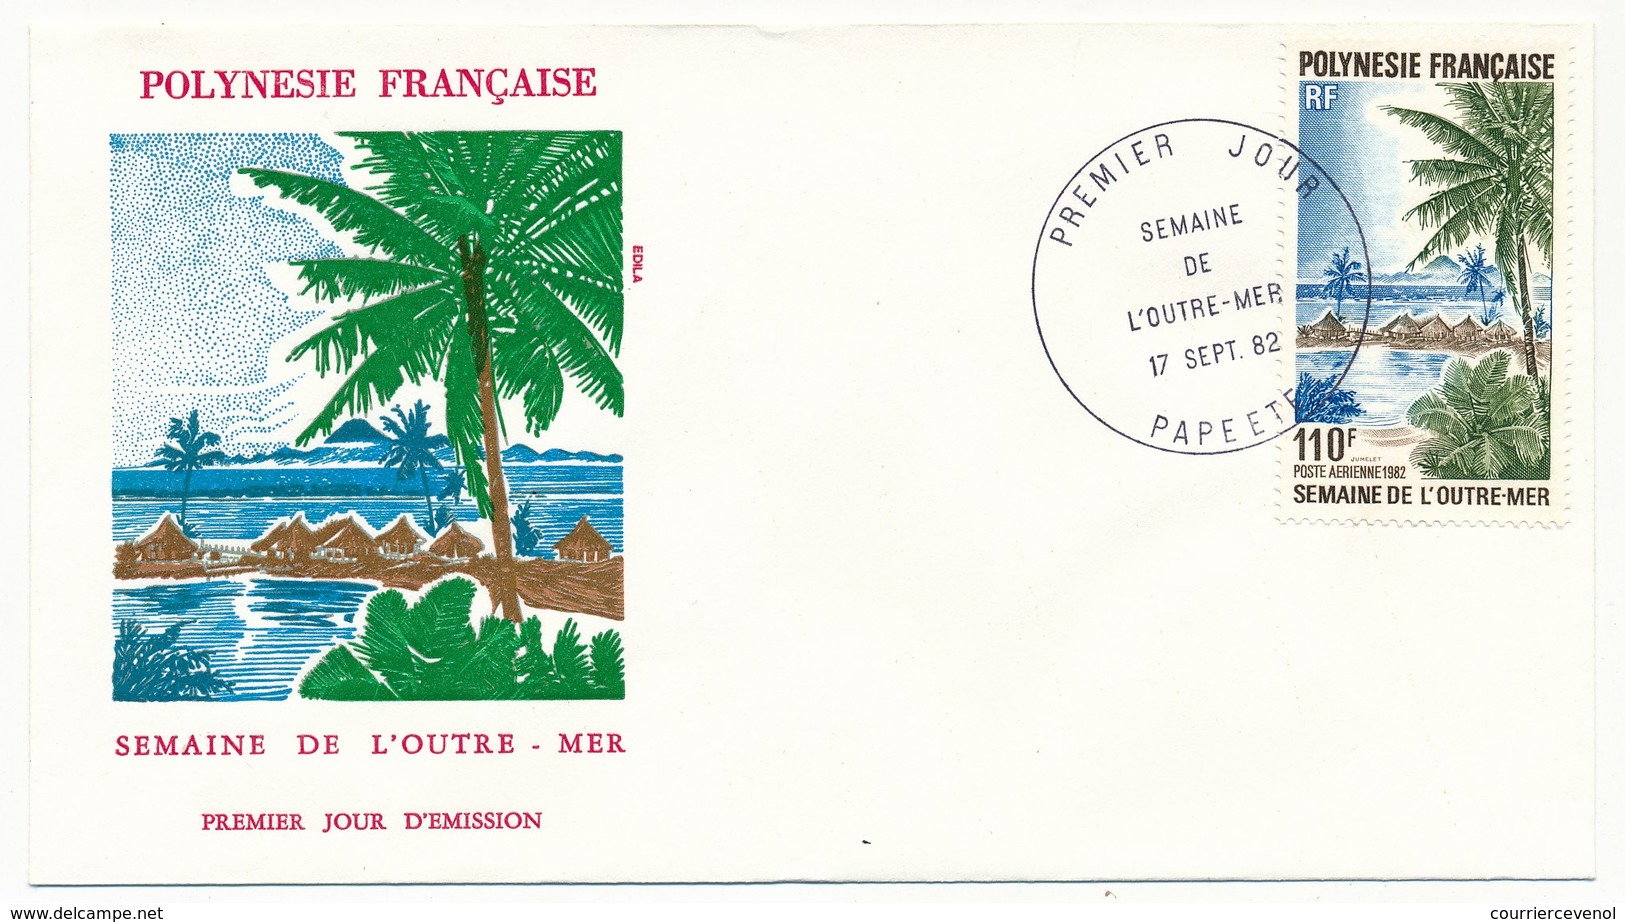 POLYNESIE FRANCAISE - FDC - Semaine De L'Outre-mer - 17 Septembre 1982 - Papeete - FDC